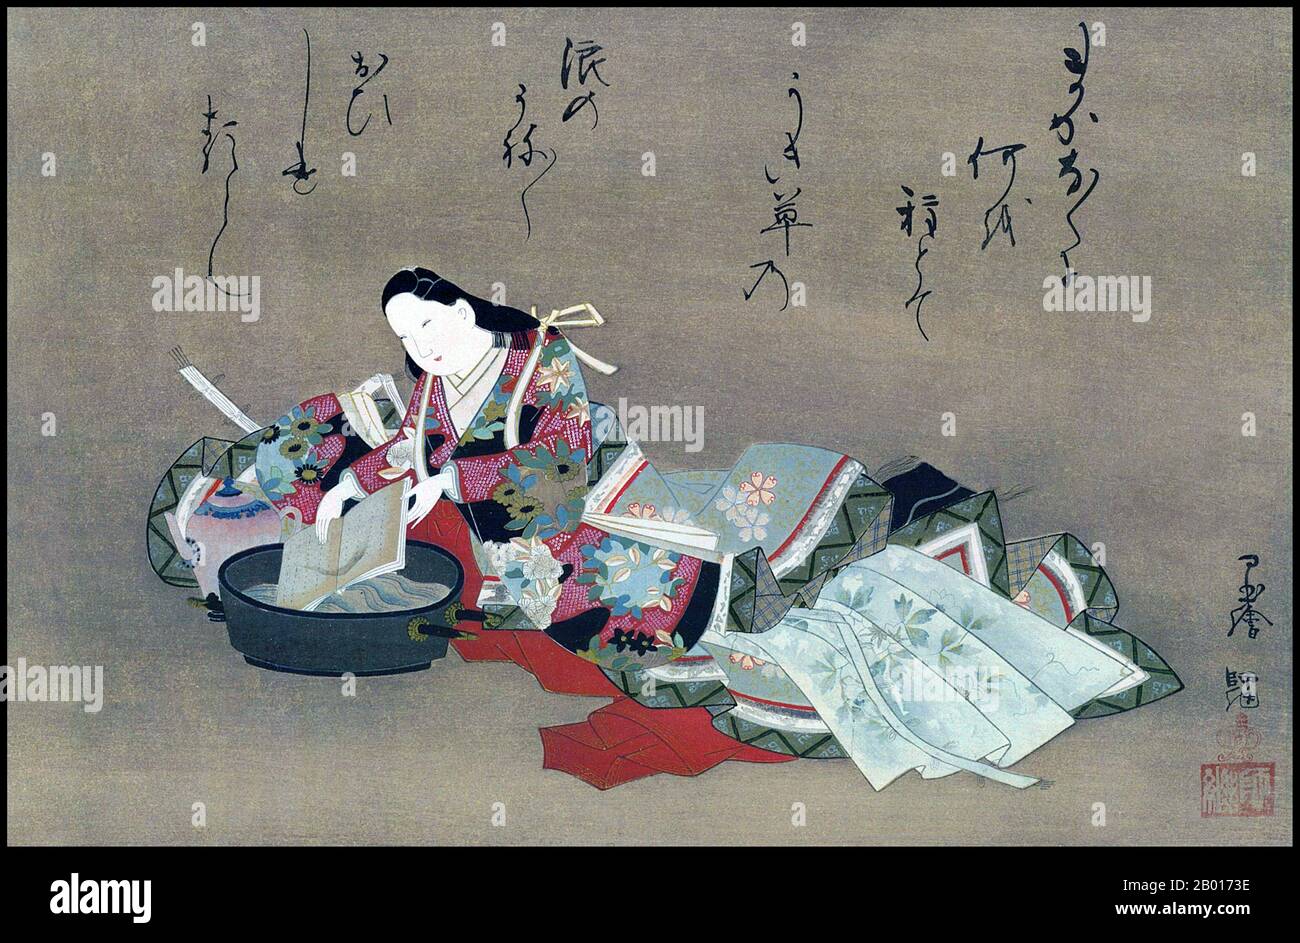 Japon: "La poetess Komachi Washing a Book".Peinture Handscroll, XVIIe siècle.Yamato-e est un style de peinture japonaise inspiré des peintures de la dynastie Tang et développé à la fin de la période Heian.Il est considéré comme le style japonais classique.Depuis la période Muromachi (XVe siècle), le terme Yamato-e a été utilisé pour distinguer les œuvres des peintures de style chinois contemporain (kara-e), inspirées par les peintures du bouddhisme zen de la dynastie Song et Yuan.Les Yamato-e parlent souvent de thèmes narratifs avec du texte, montrent la beauté de la nature, par exemple des lieux célèbres (meisho-e). Banque D'Images